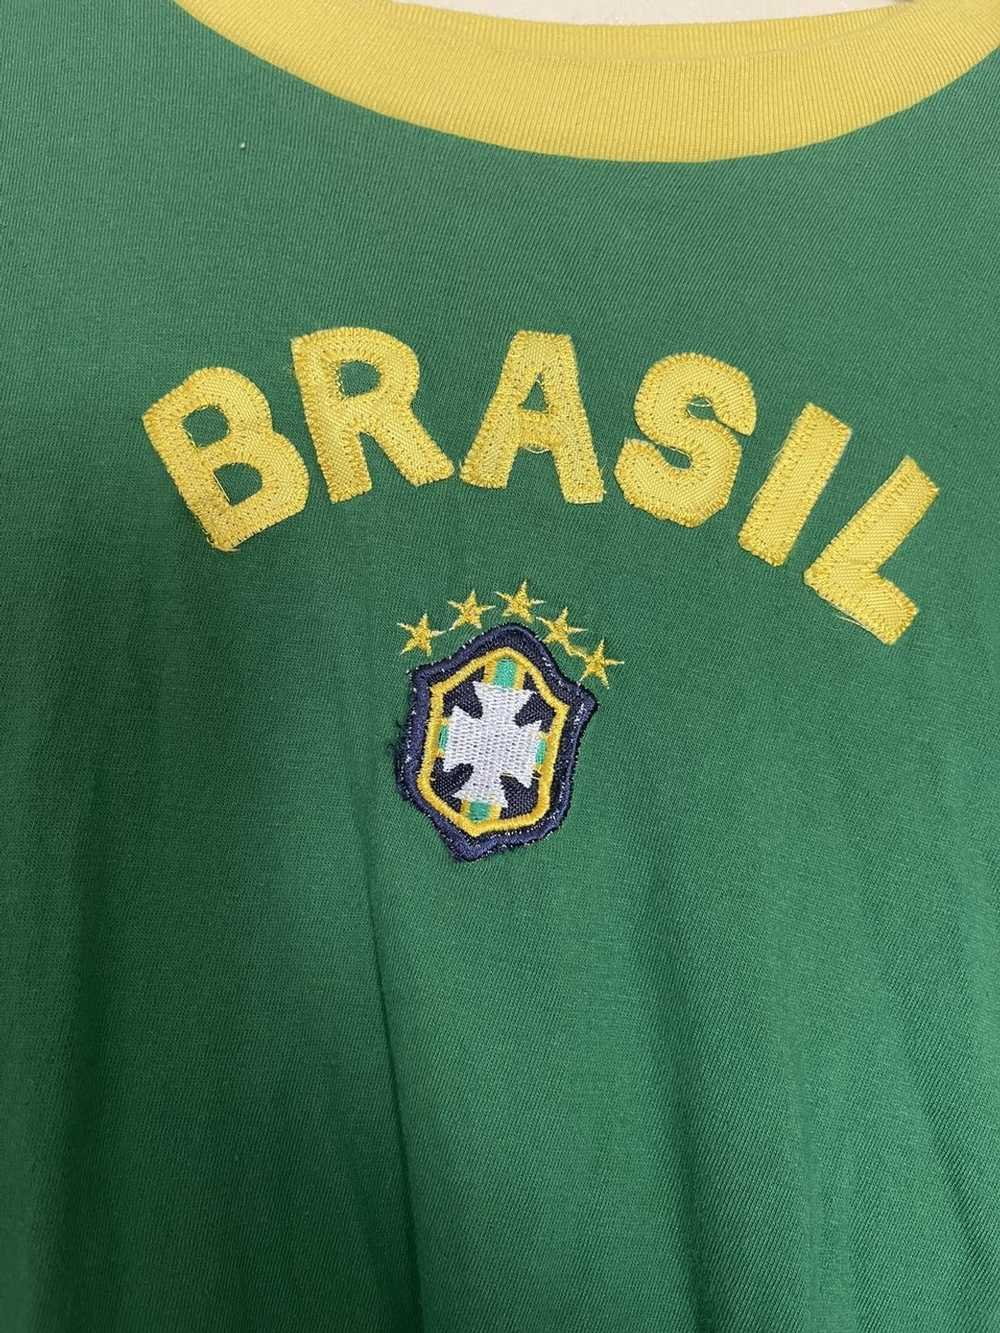 Vintage Brazil - image 2